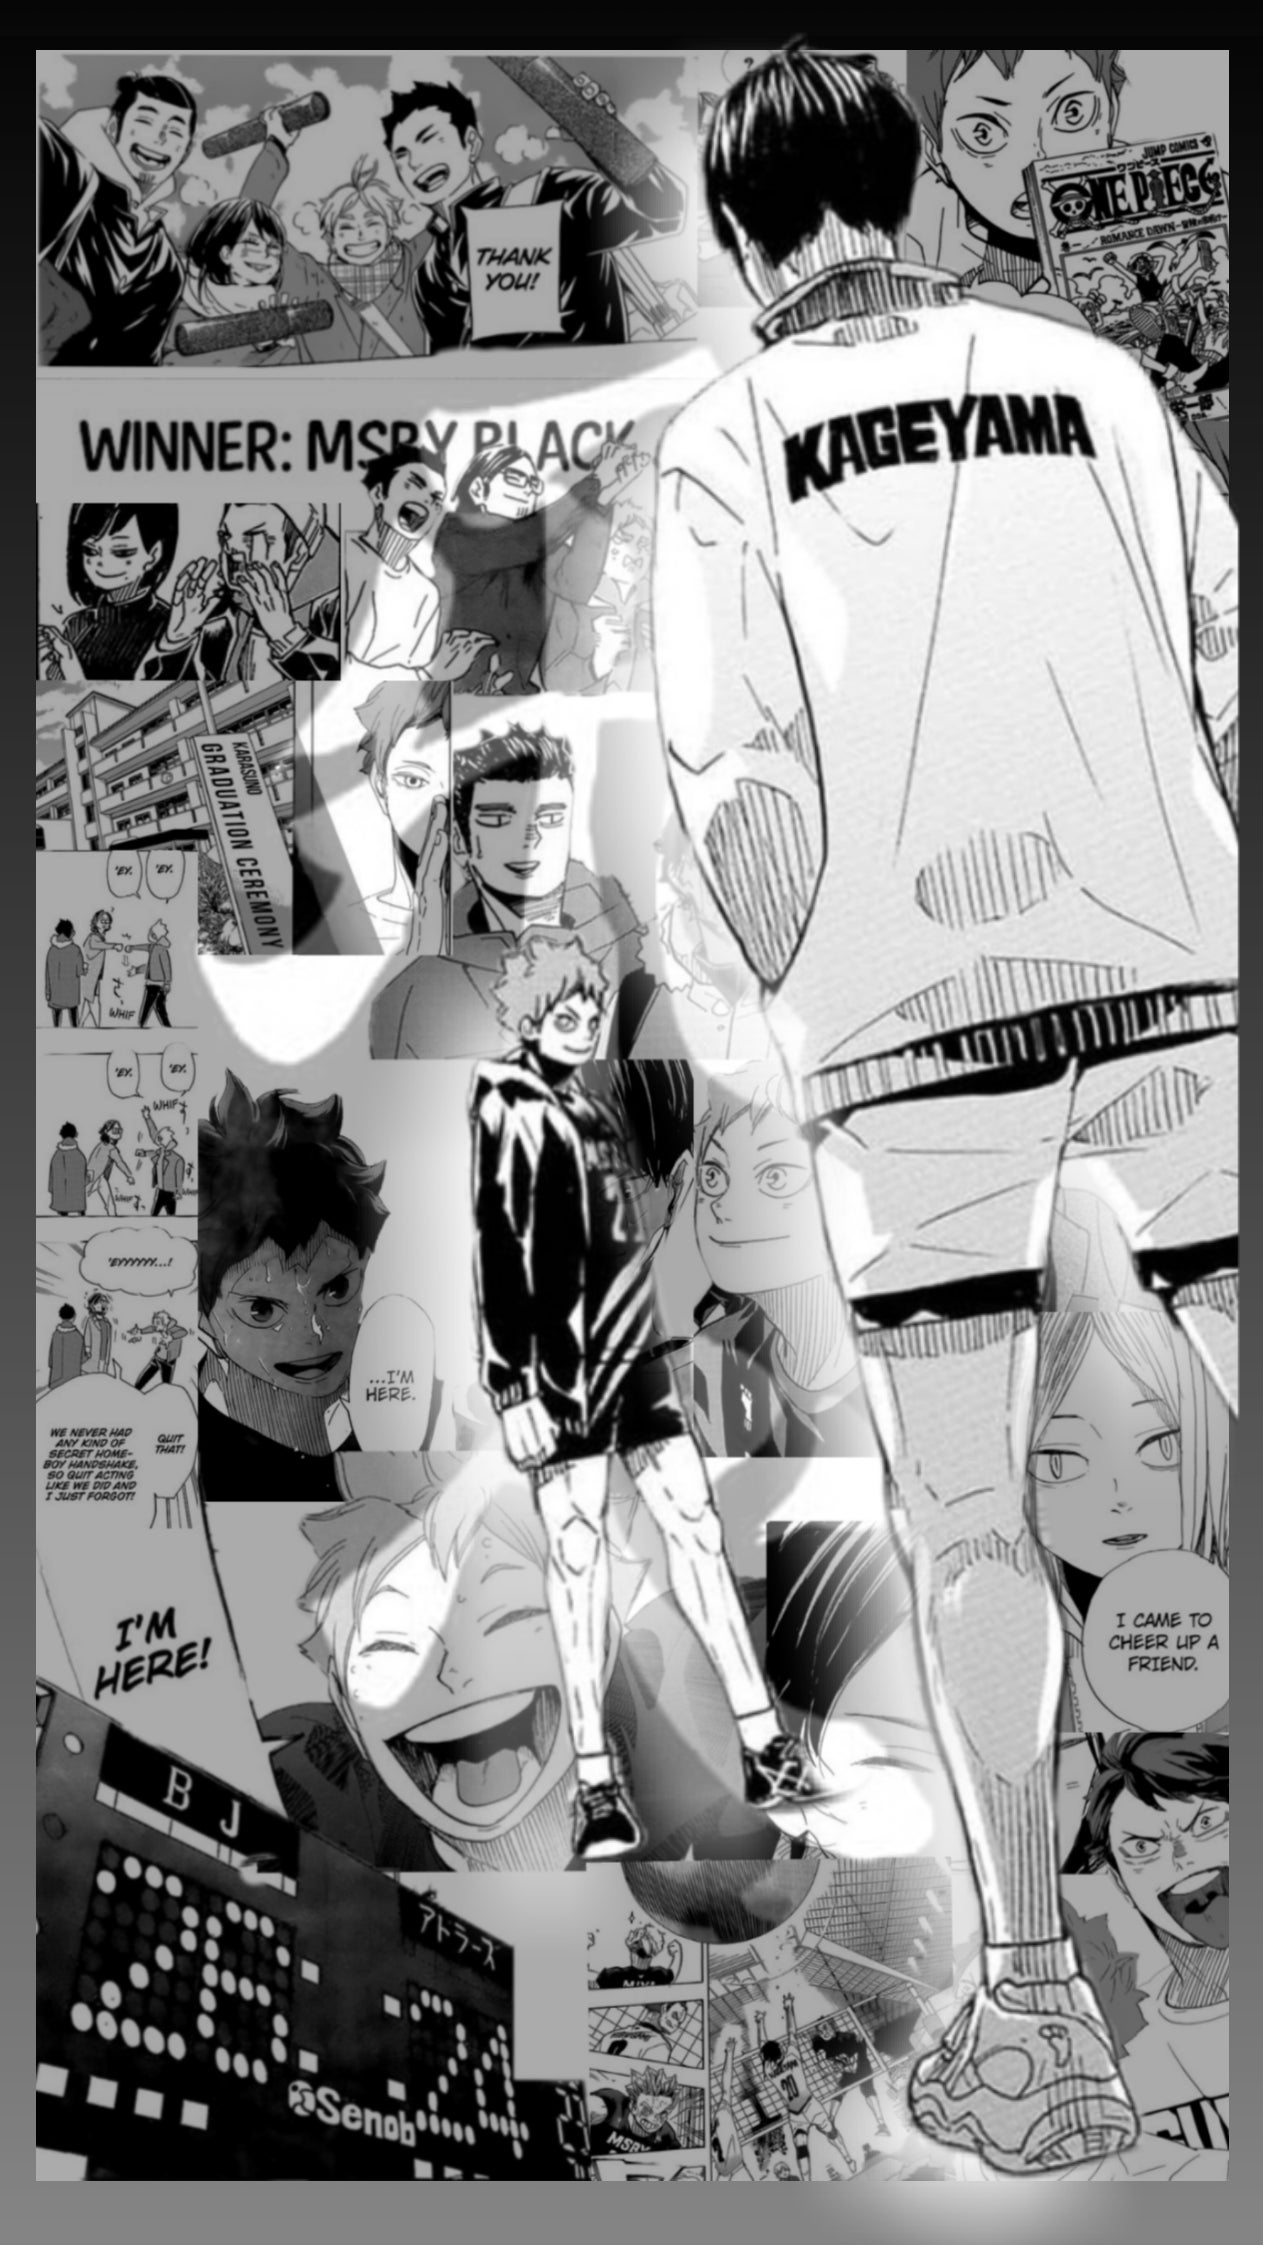 Haikyuu manga wallpapers by me!